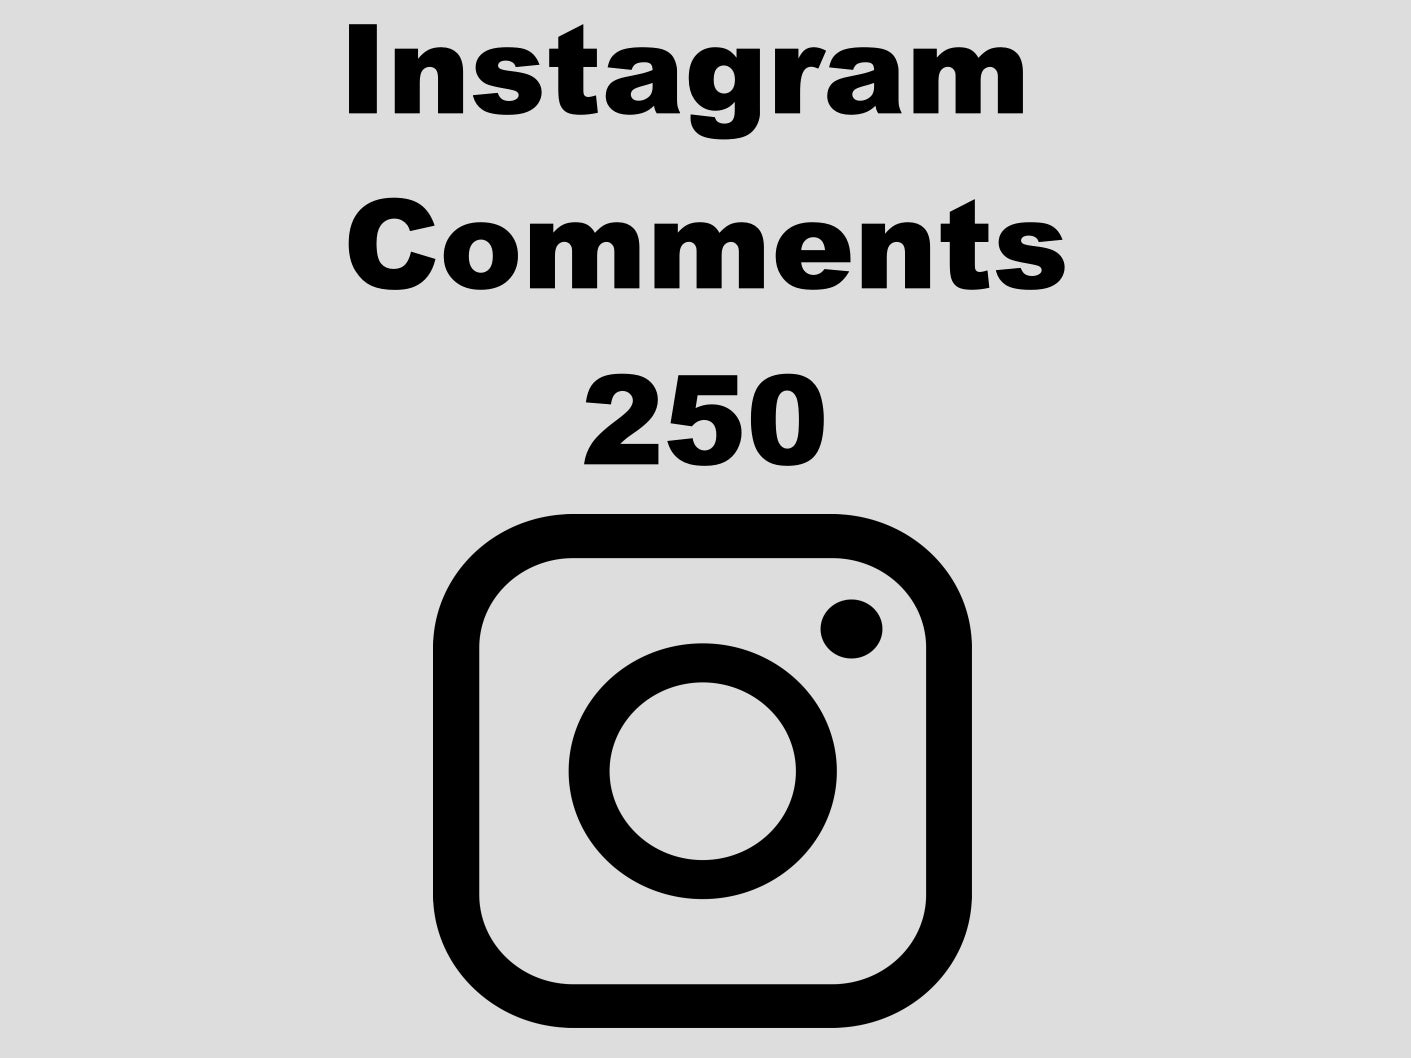 echte Instagram Comments günstig kaufen 250 Kommentare